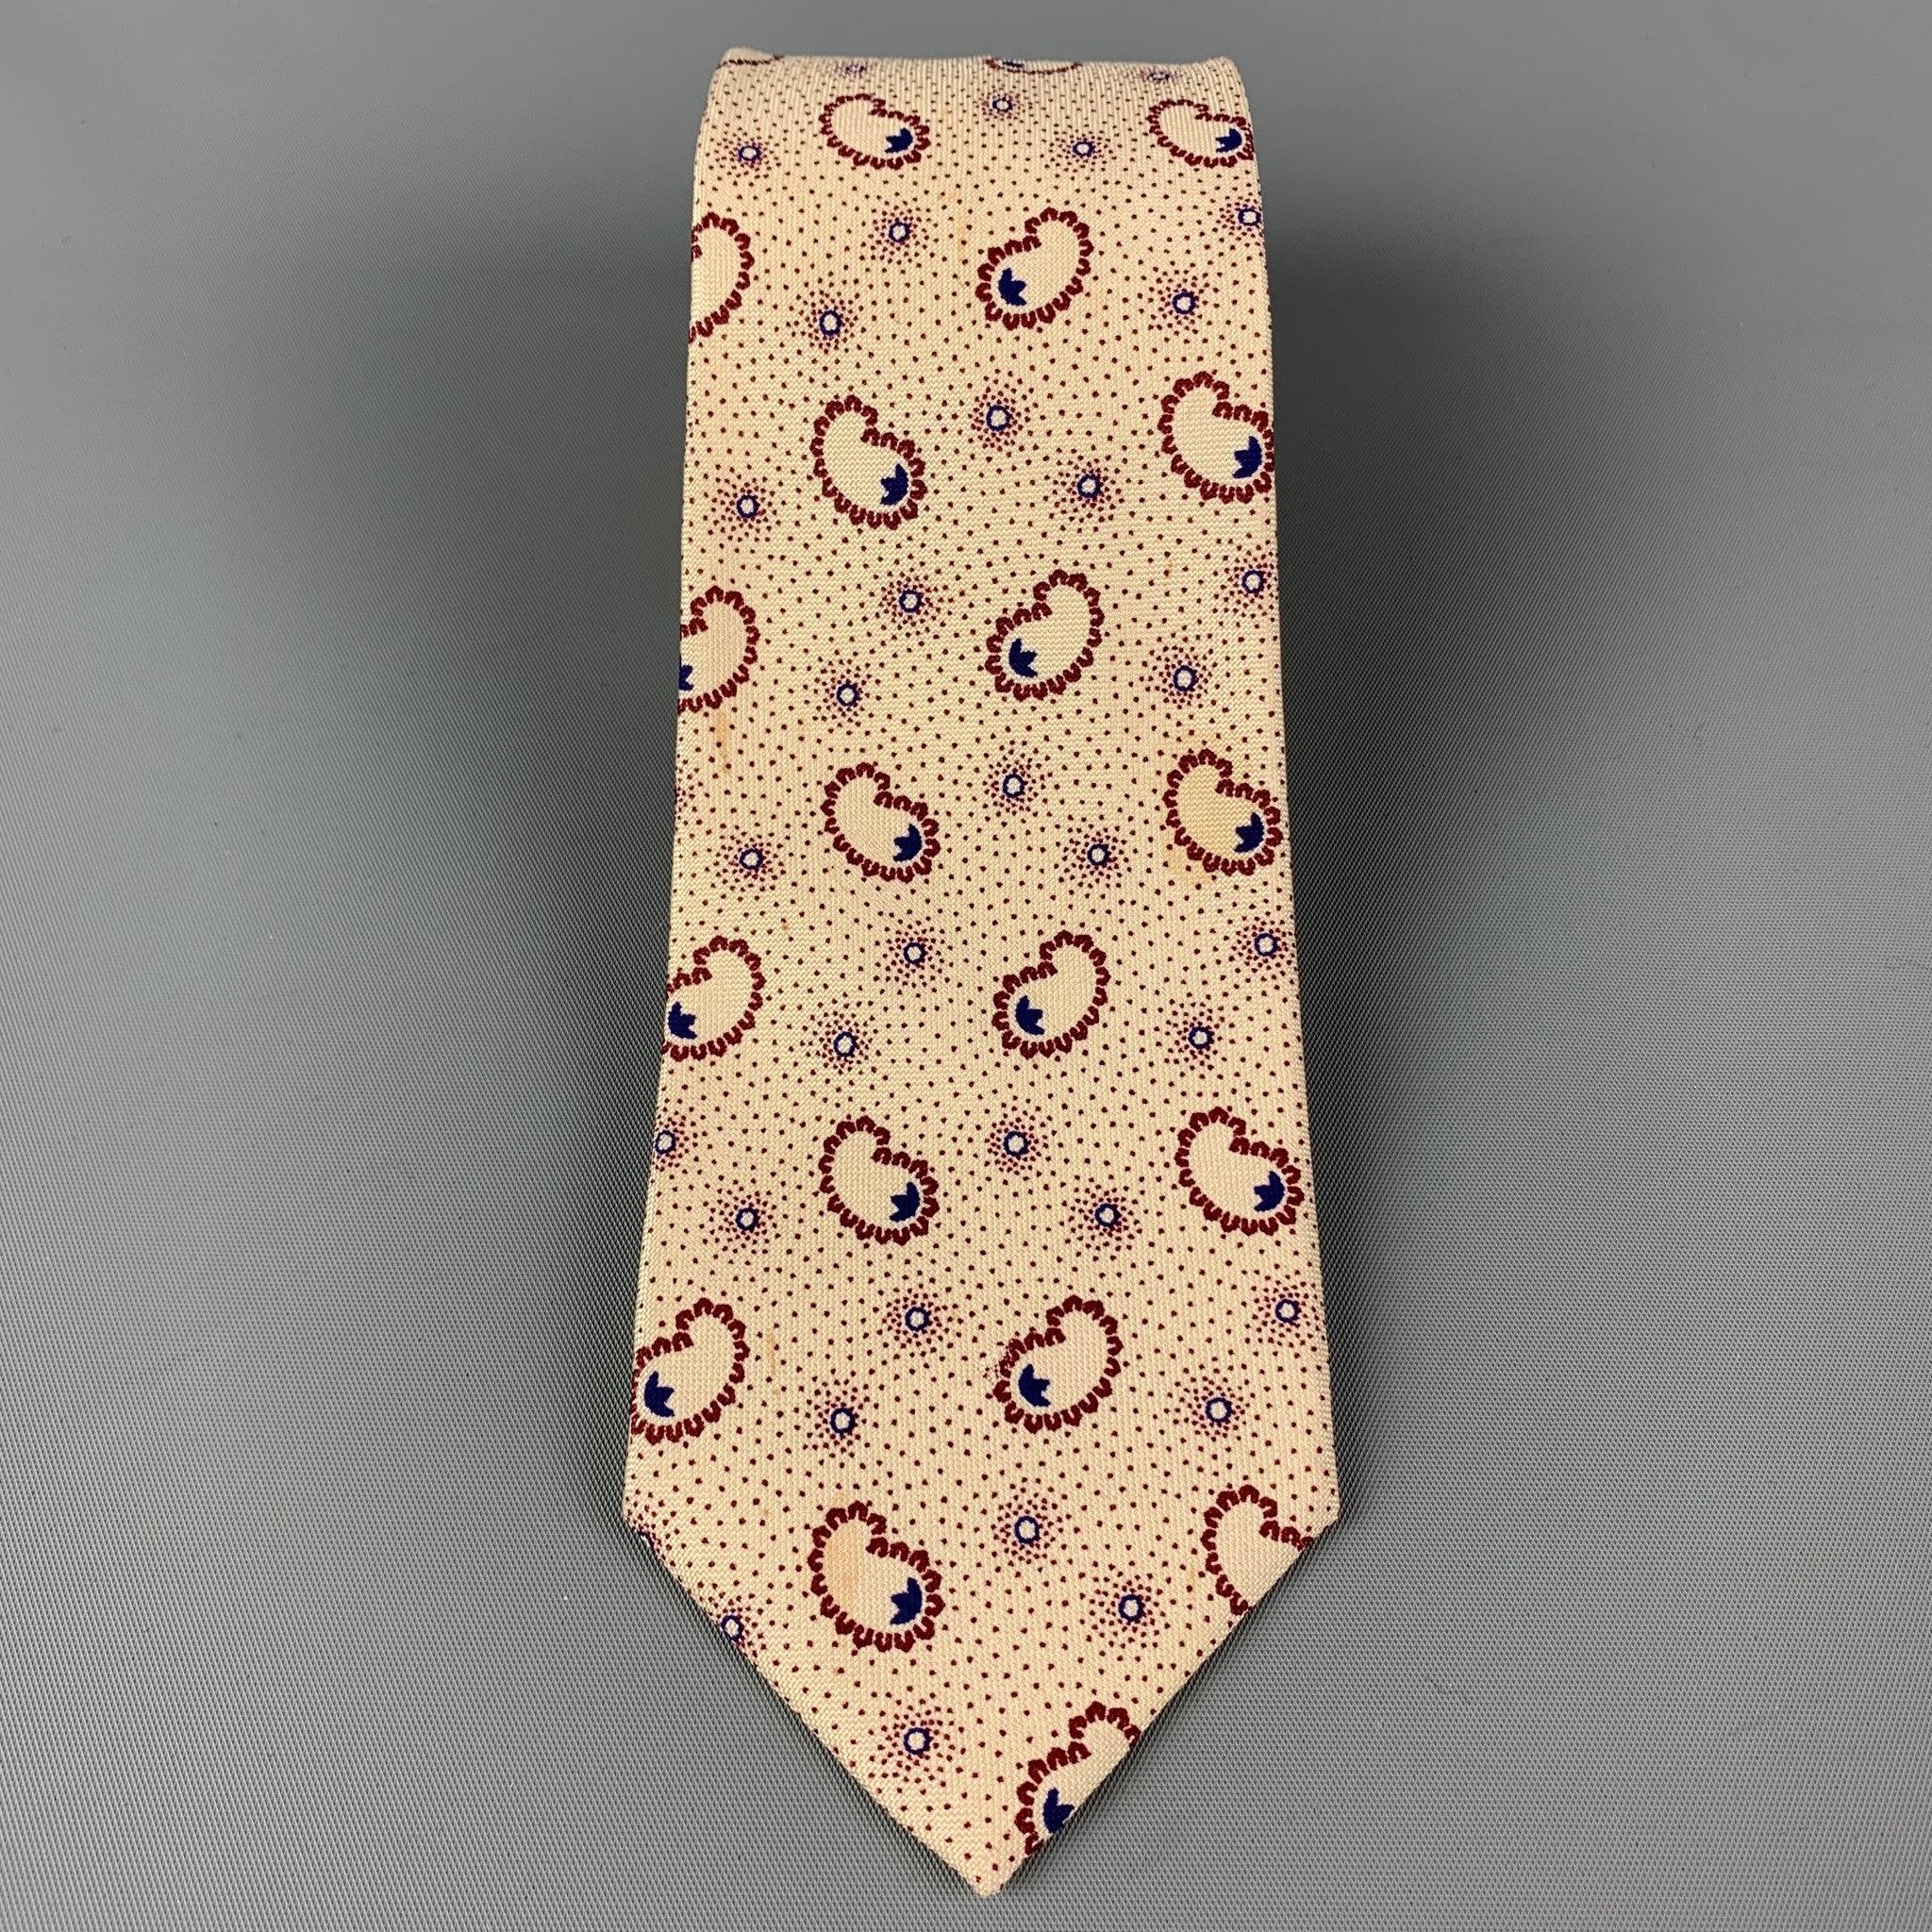 KENZO
Die Krawatte ist aus einem cremefarbenen und burgunderroten MATERIAL mit einem All-Over-Punktdruck.  Guter Pre-Owned Zustand. 

Abmessungen: 
  Breite: 2.75 Zoll  Länge: 56 Zoll 
  
  
 
Referenz: 119903
Kategorie: Krawatte
Mehr Details
   